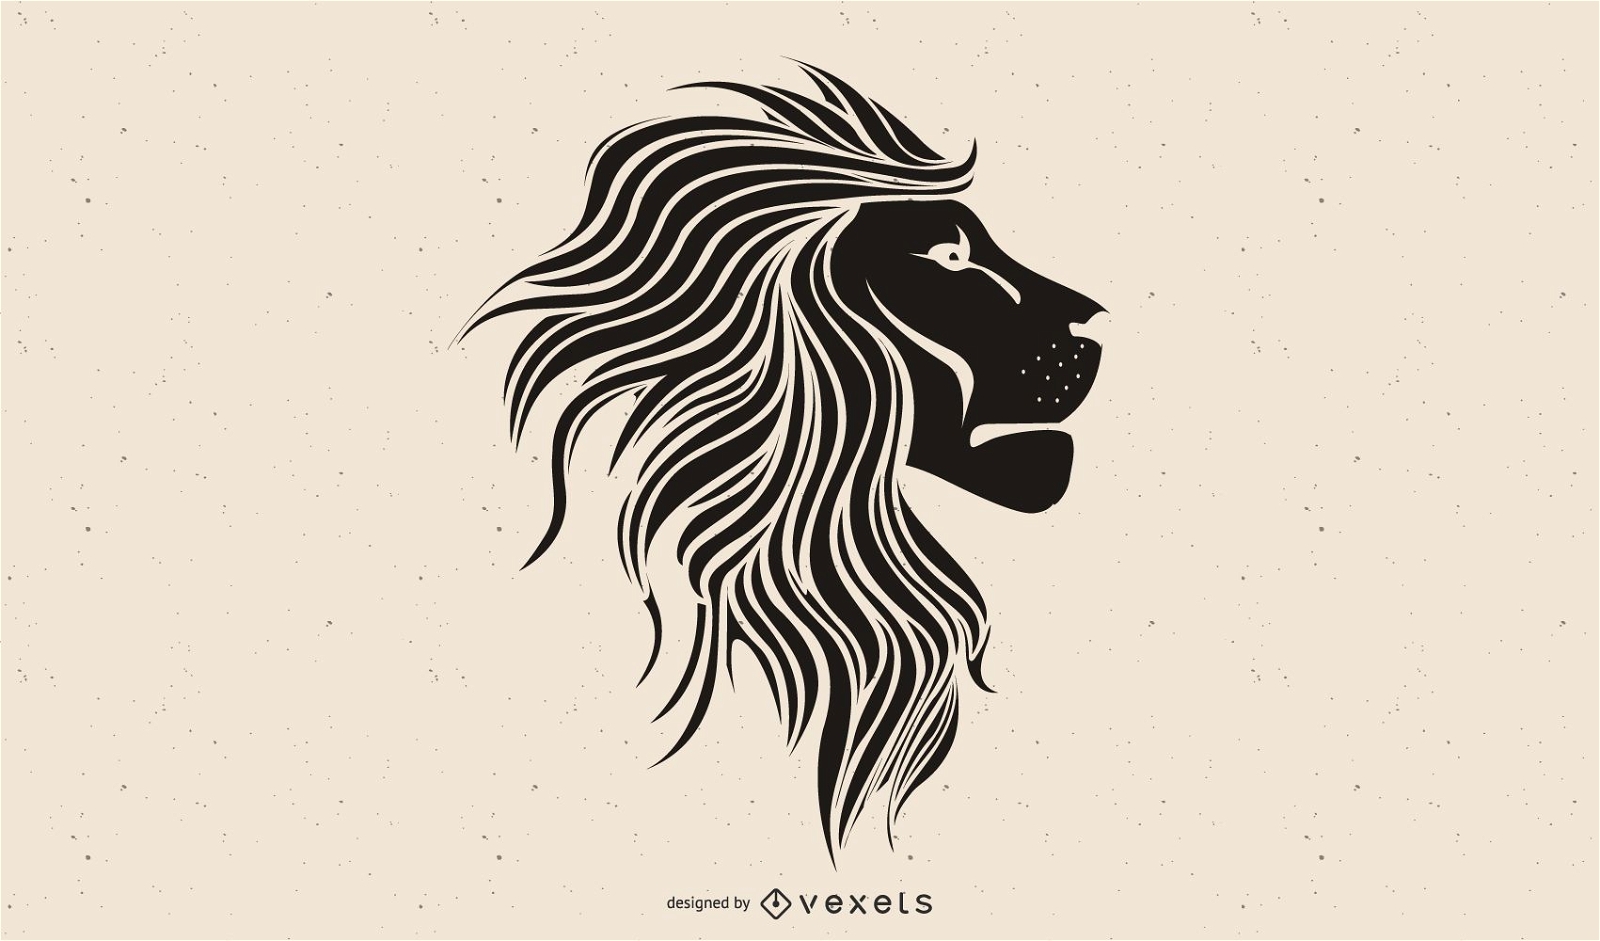 Lion logo HD wallpapers | Pxfuel